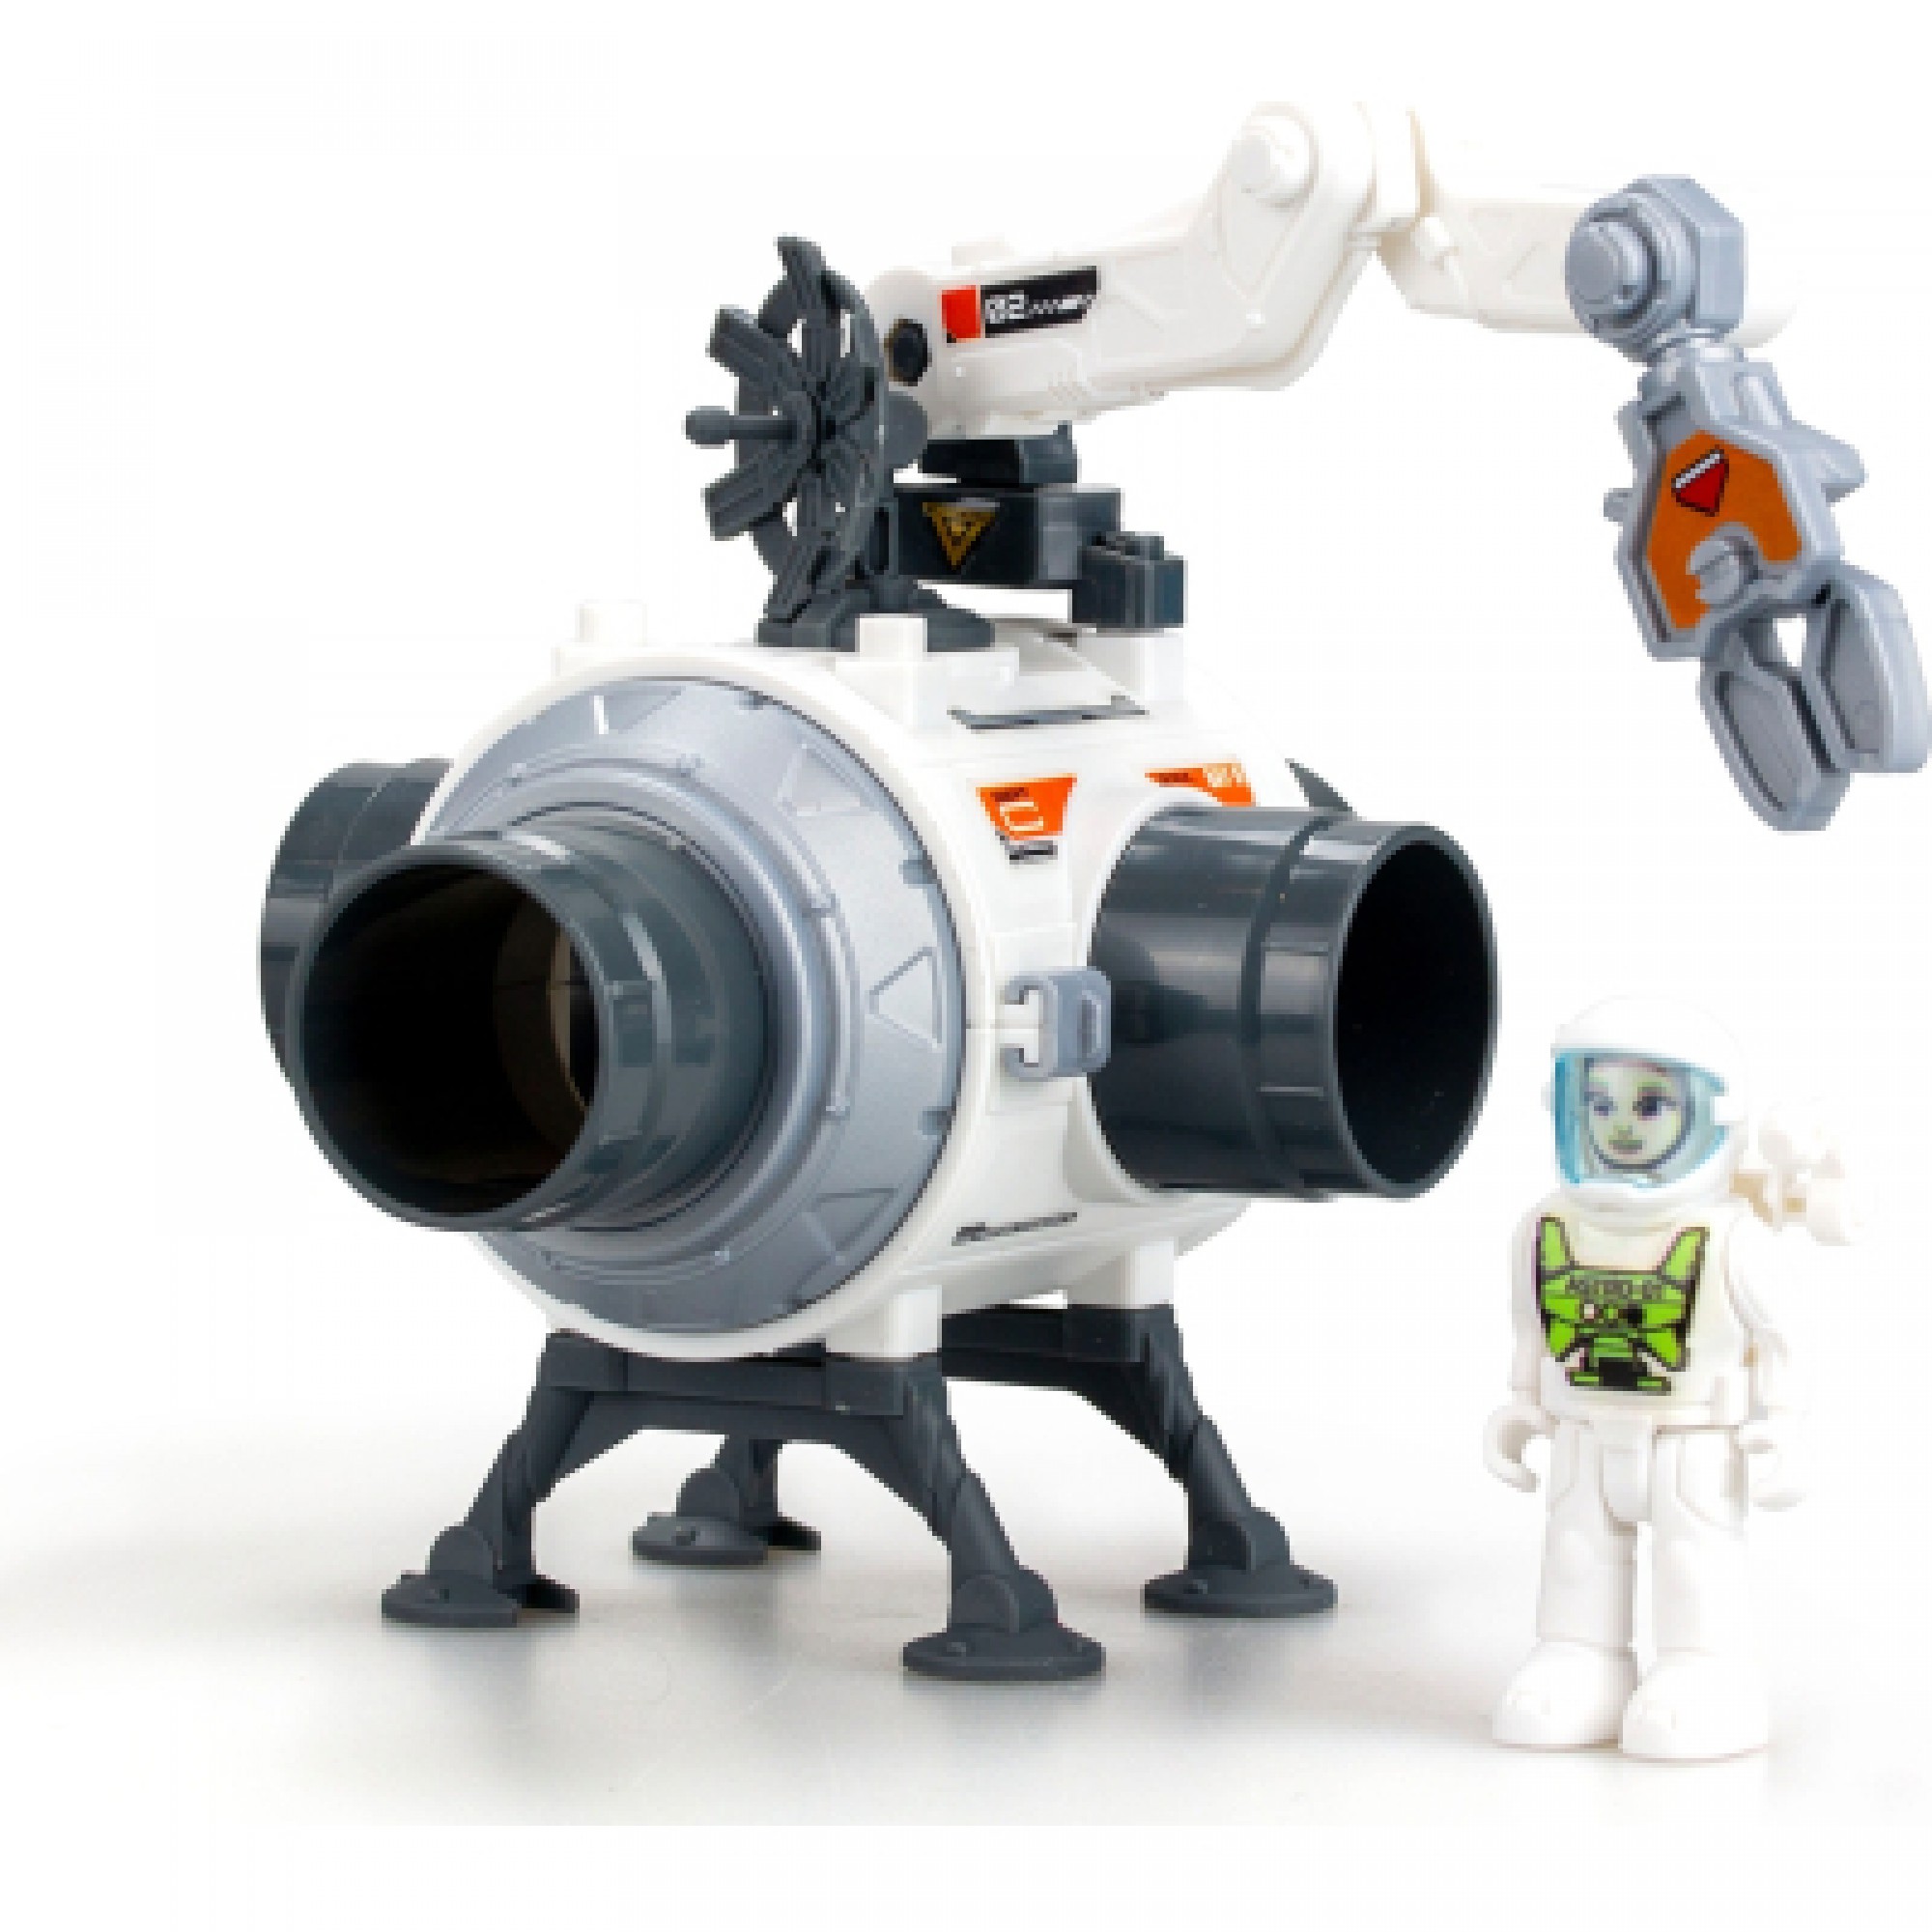 Ігровий набір Astropod з фігуркою – Місія Побудуй космічну станцію (80336)